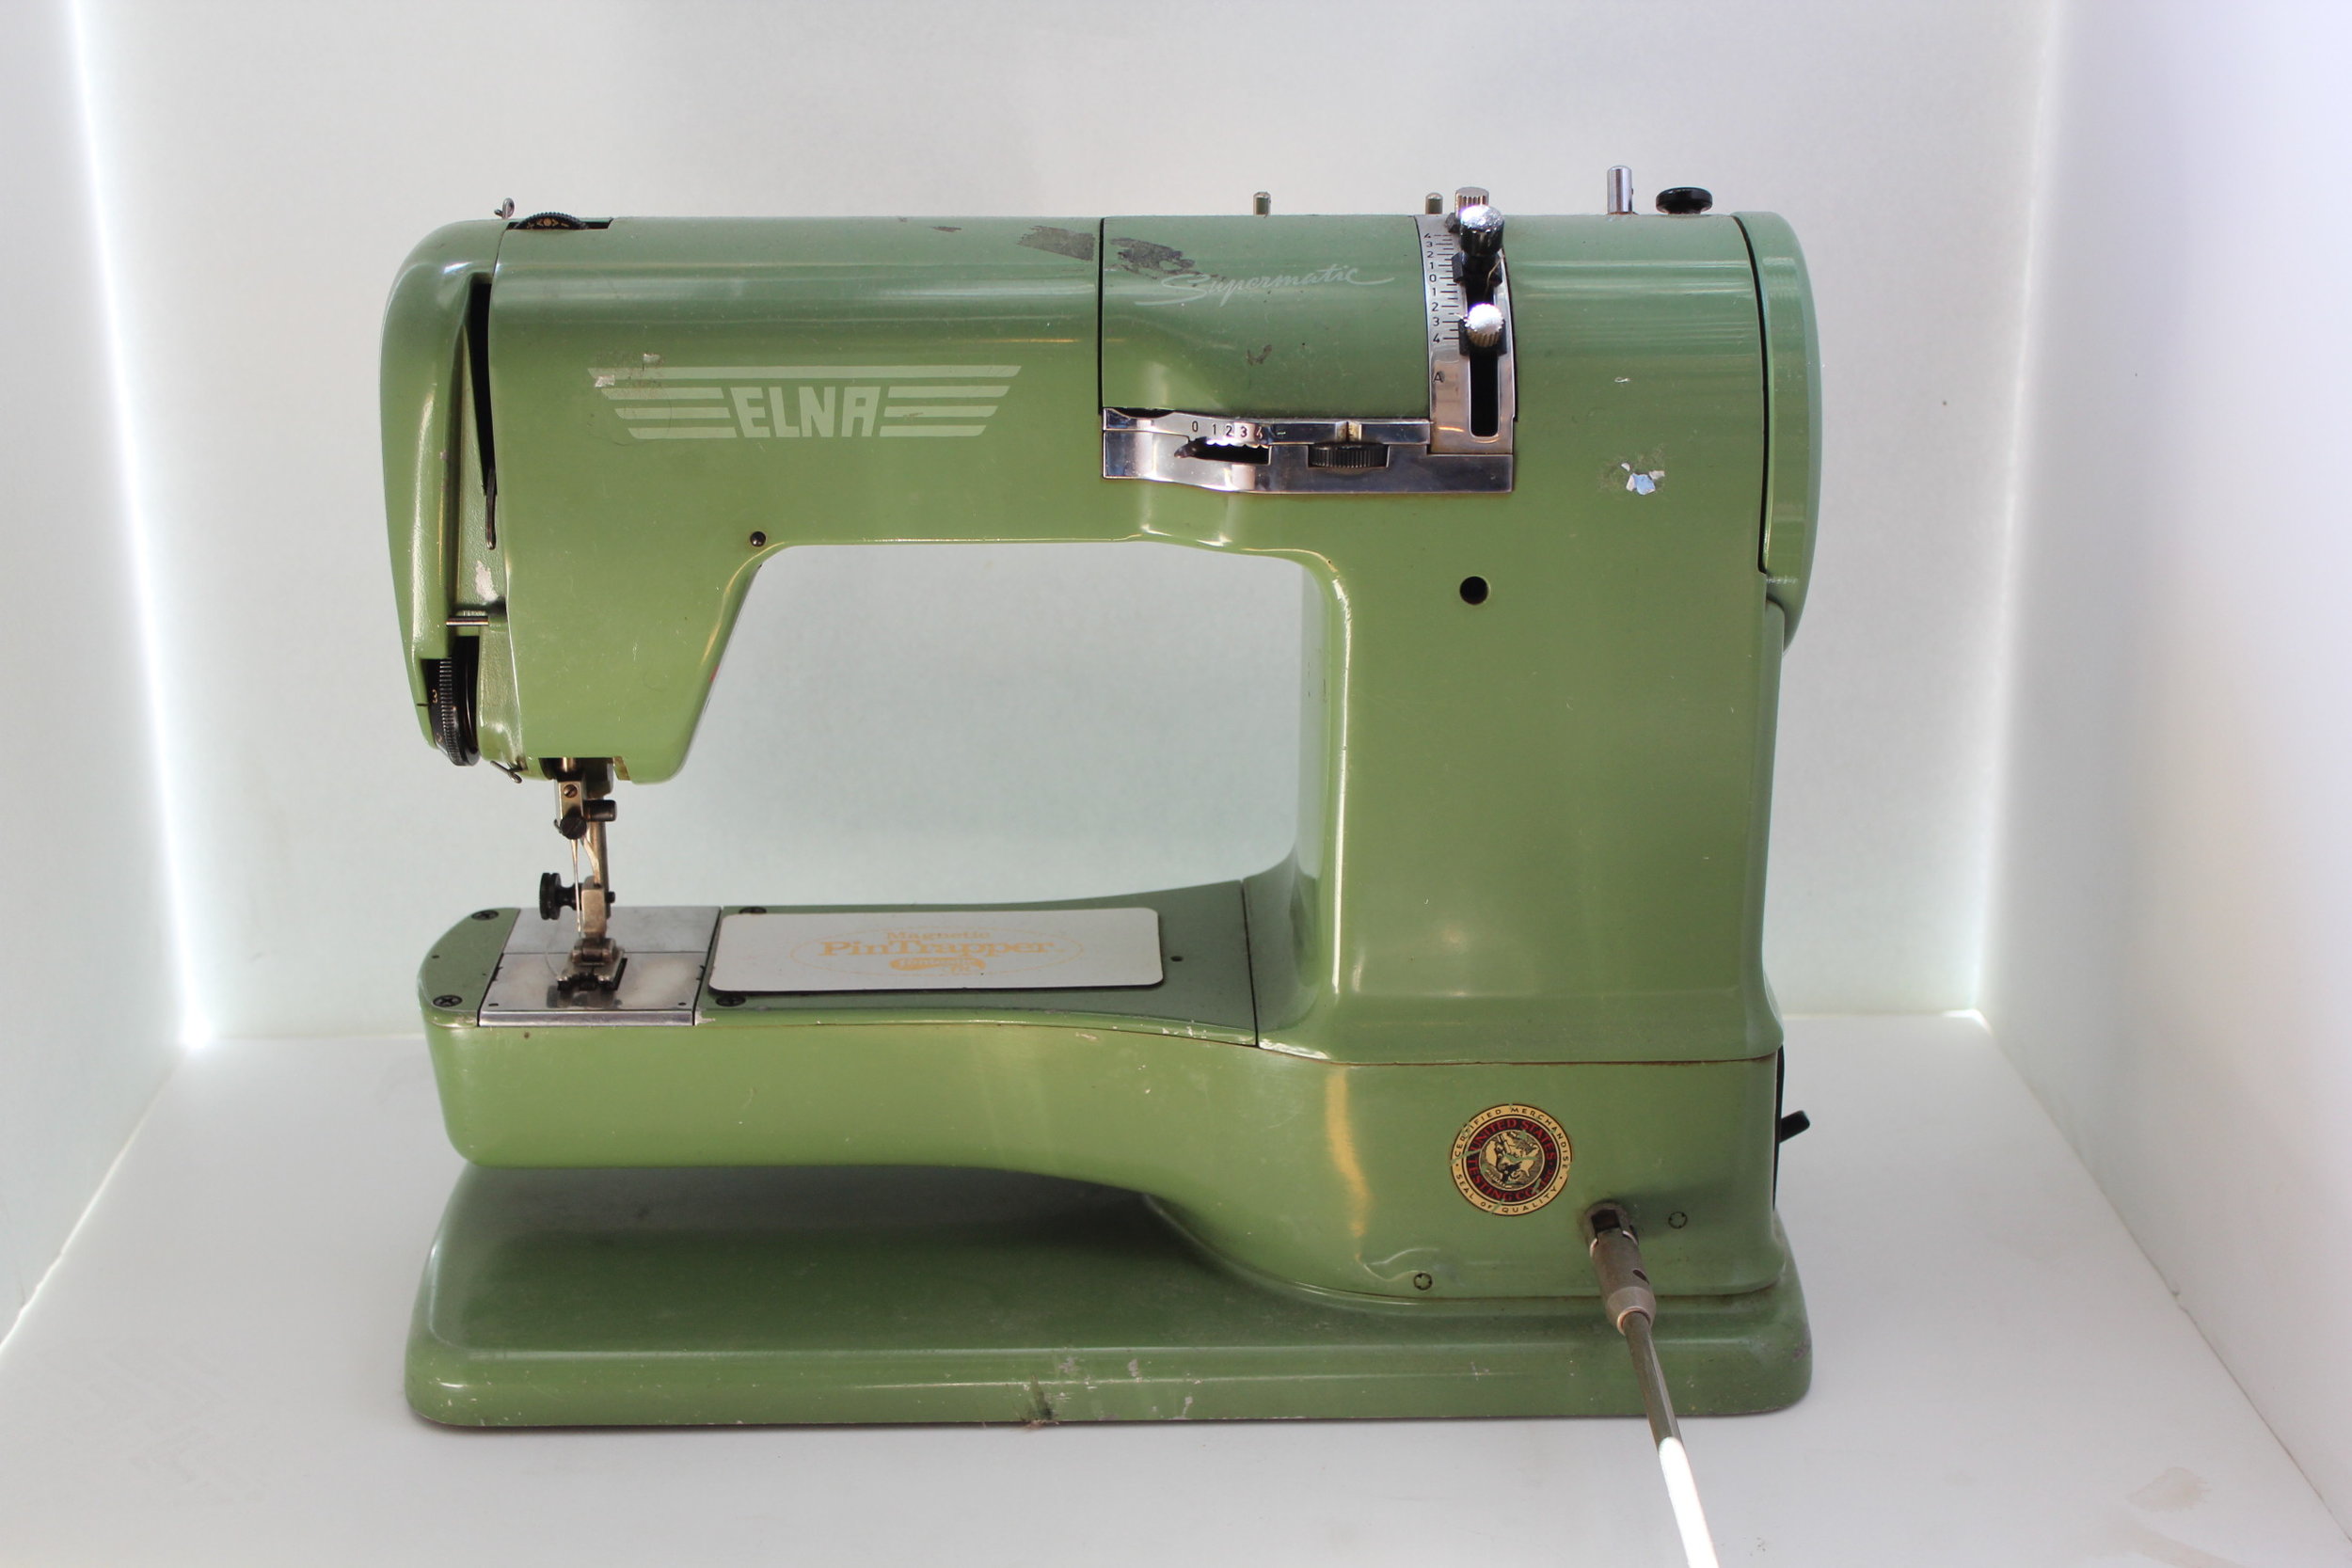 Elna grasshopper green sewing machine vintage